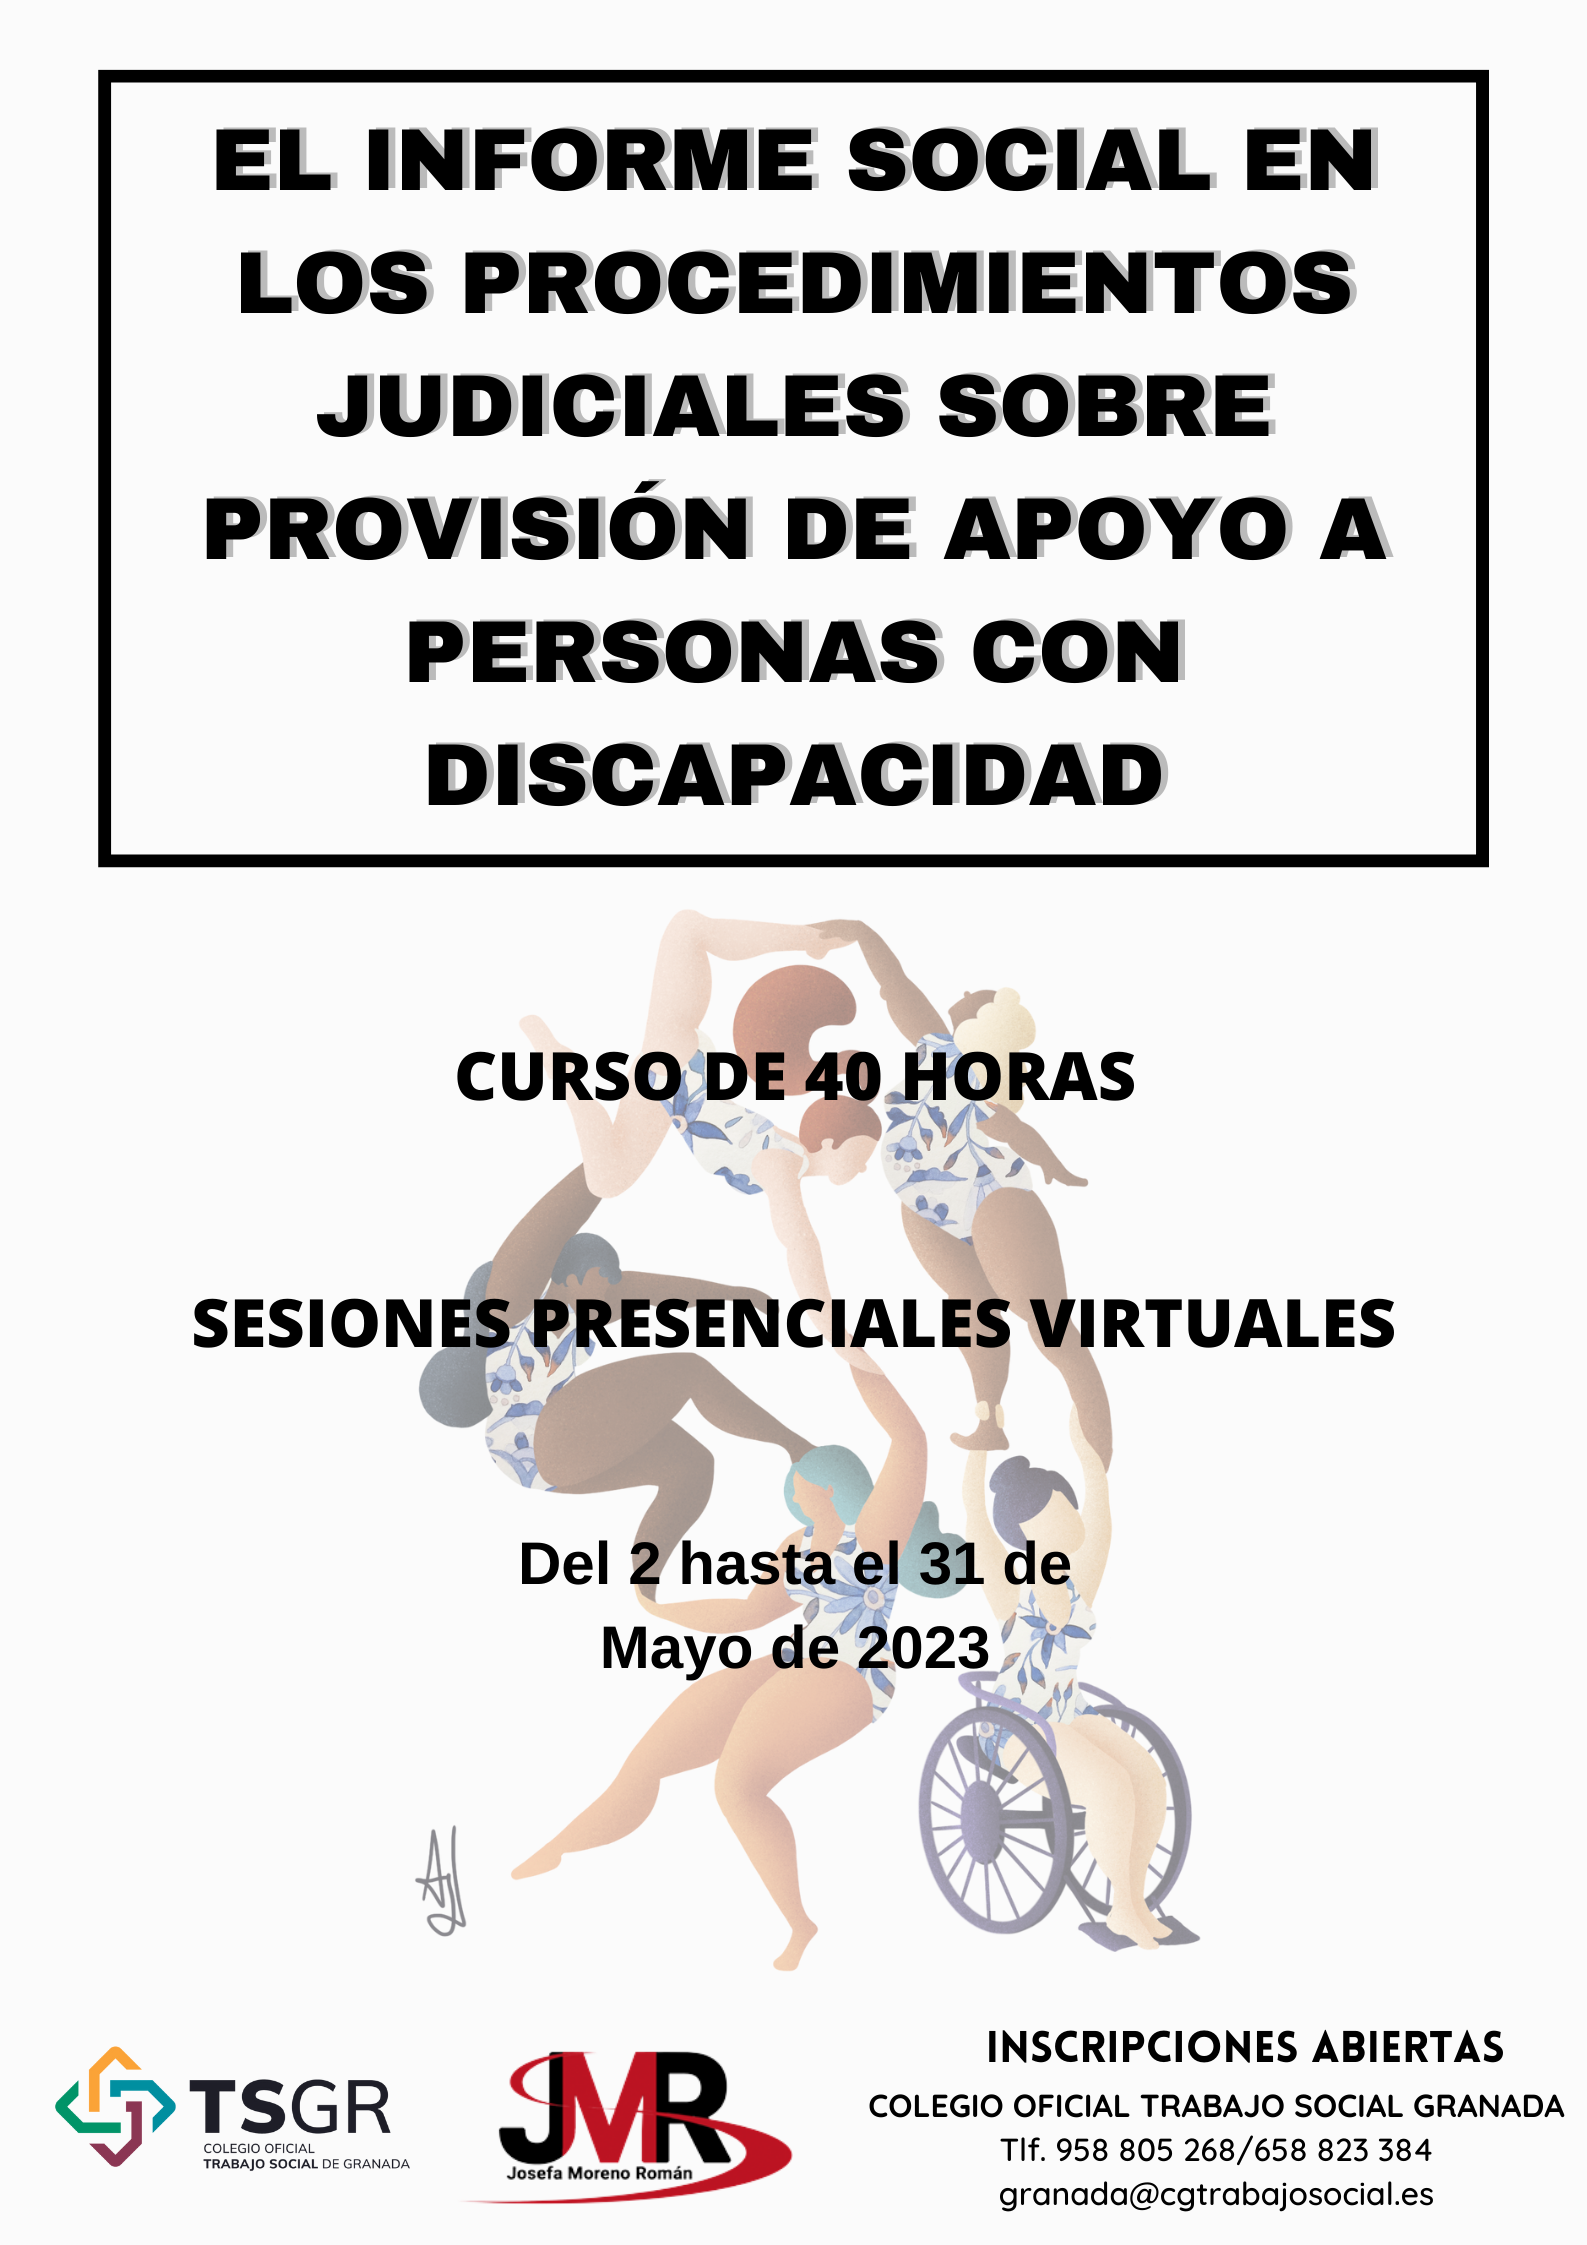 CURSO: El Informe social en los procedimientos judiciales sobre provisión de apoyo a personas con discapacidad